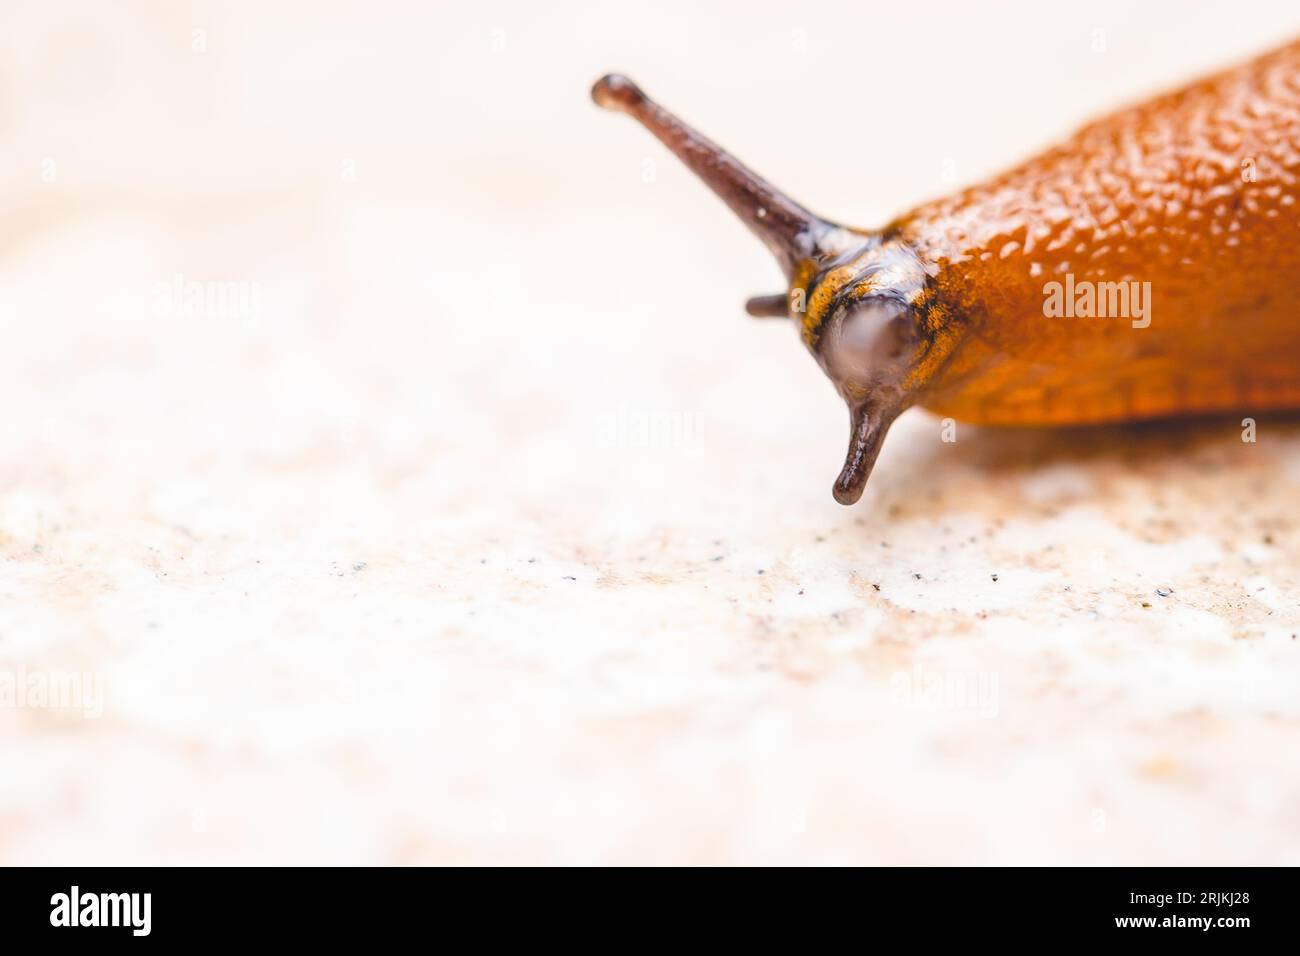 Plan rapproché d'une limace brune rampant lentement sur une surface texturée Banque D'Images